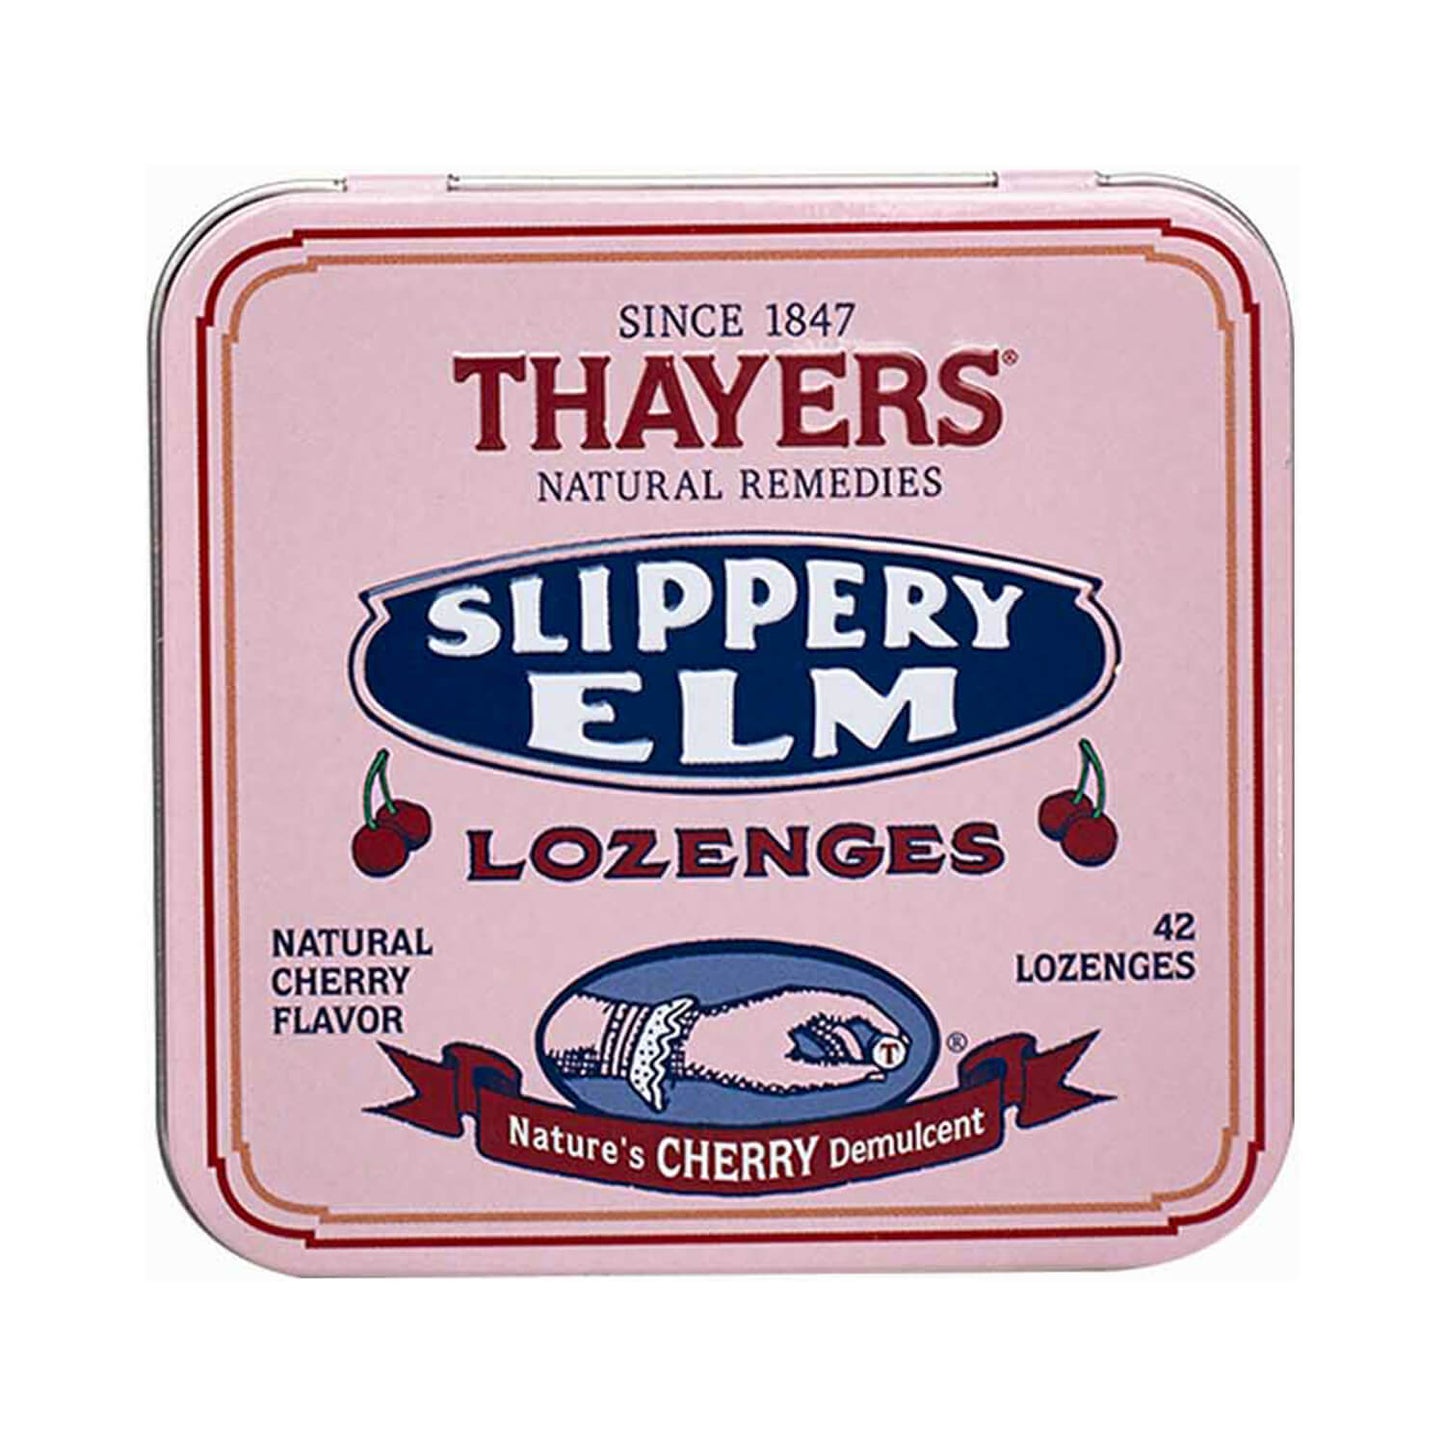 Thayers Cherry Slippery Elm Lozenges 42 Ct